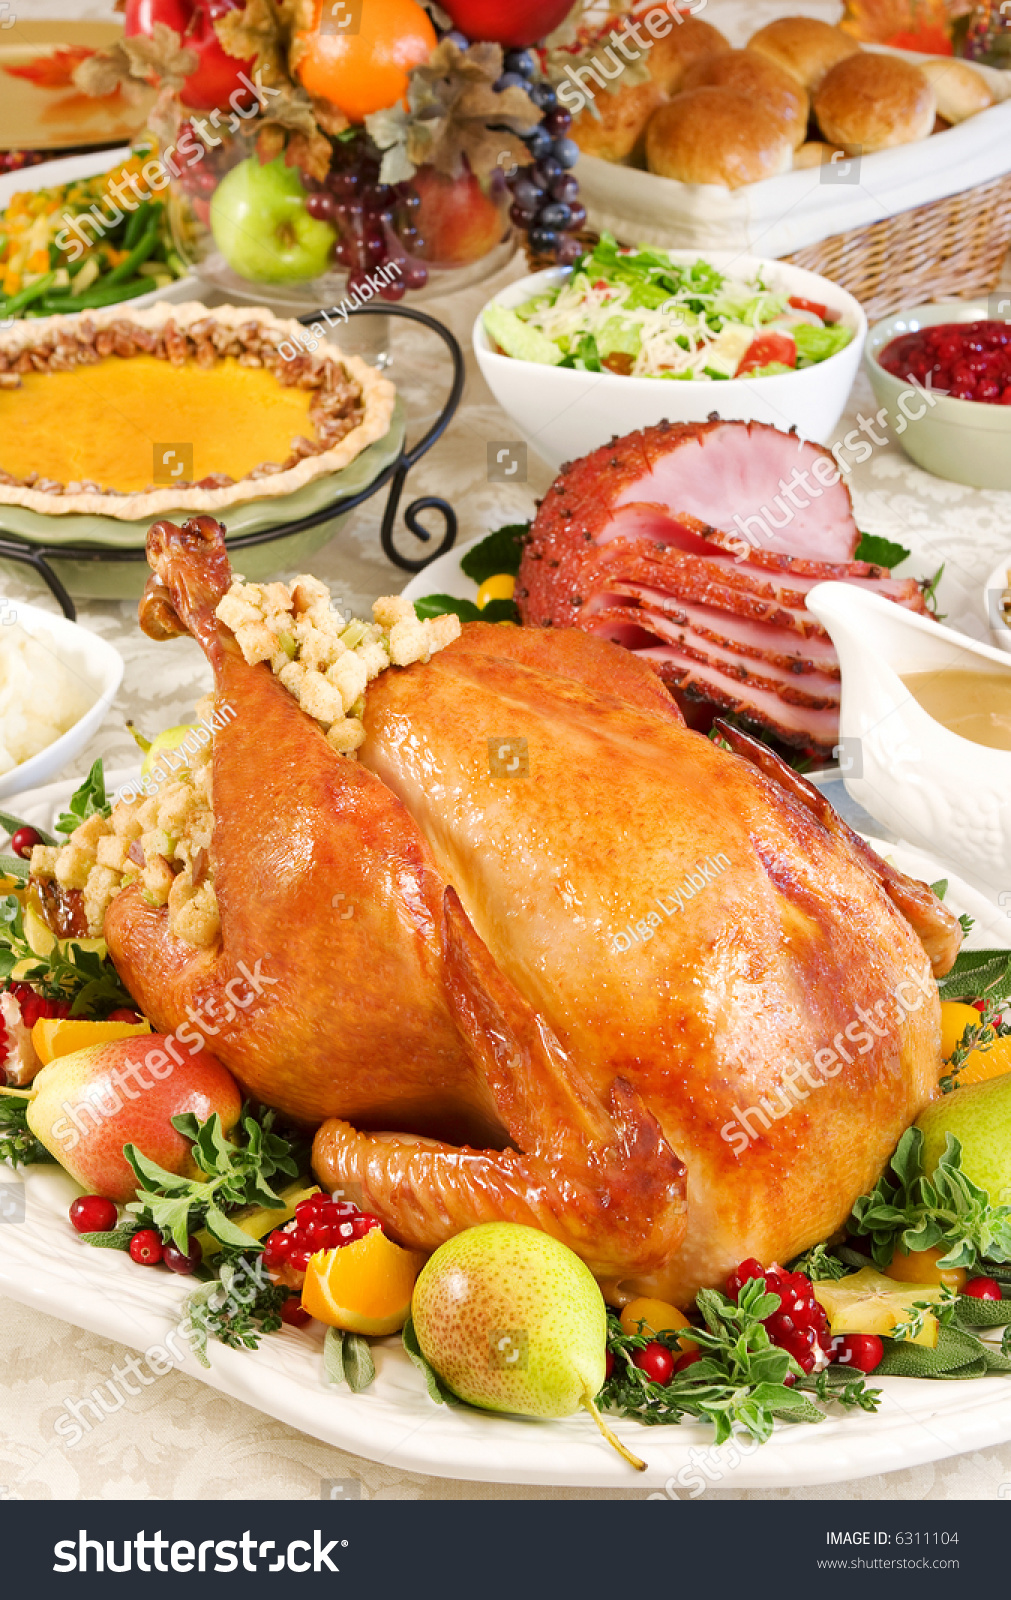 Thanksgiving Dinner Stock Photo 6311104 - Shutterstock